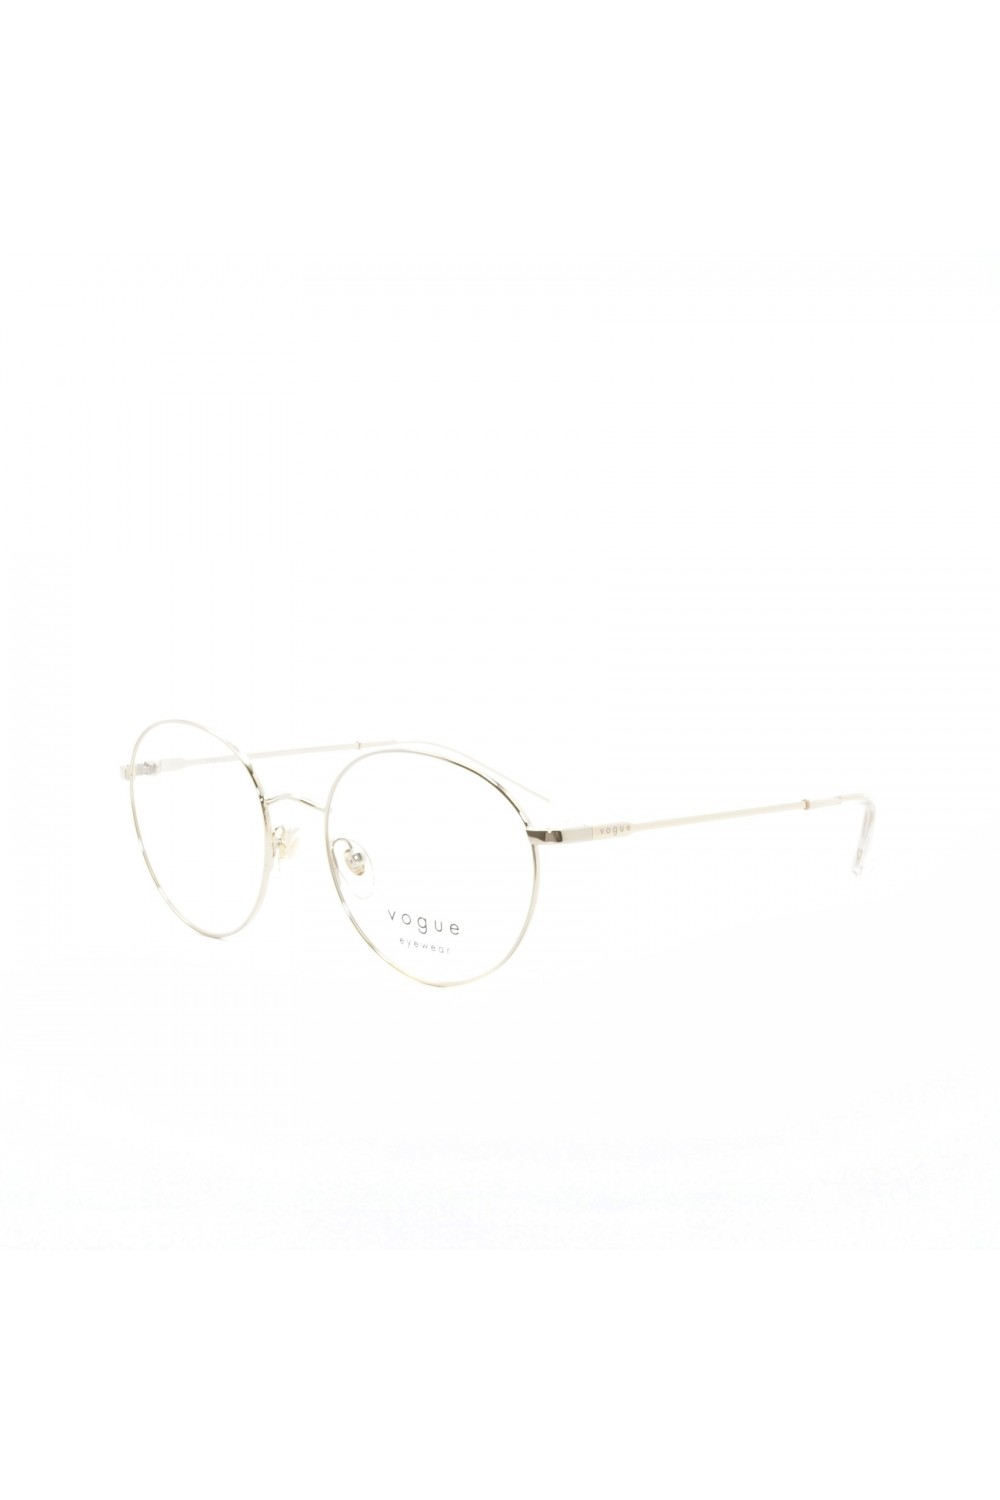 Vogue - Occhiali da vista in metallo tondi per donna oro - 4177 848